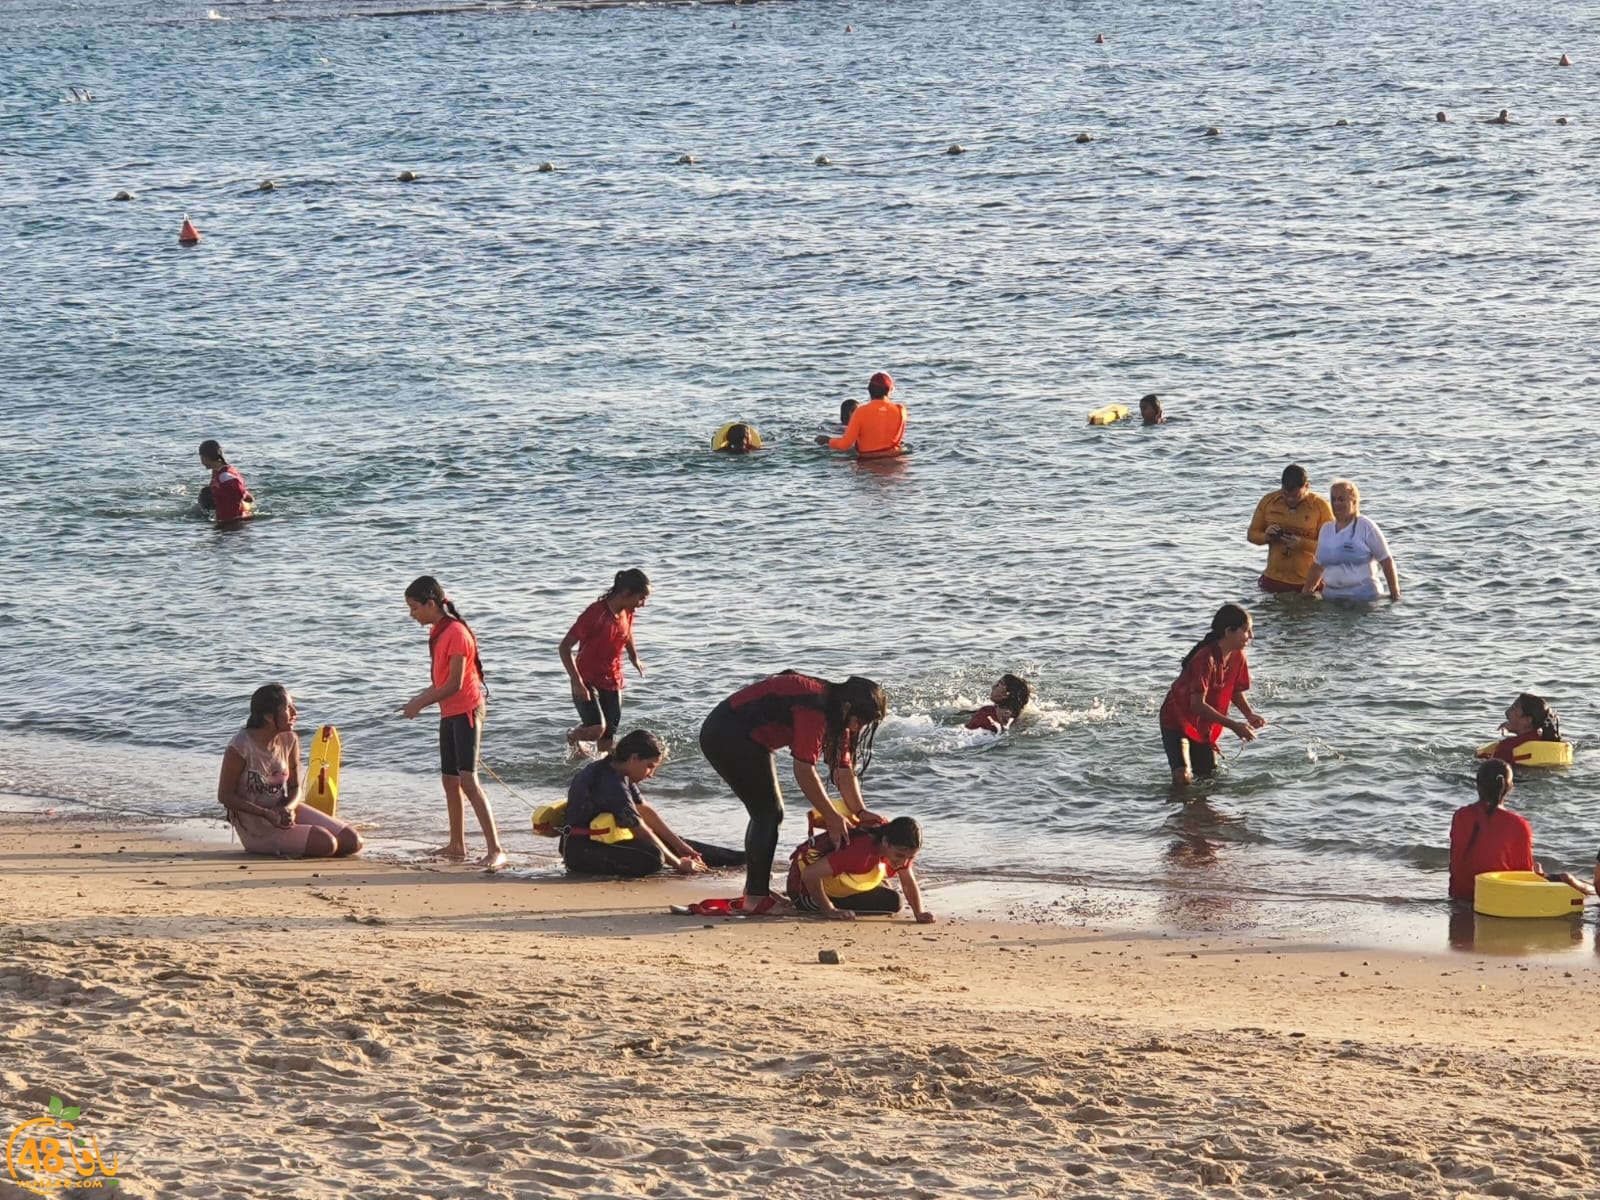  يافا: مركز دافيس لويس يختتم دورة الانقاذ البحري للفتيات